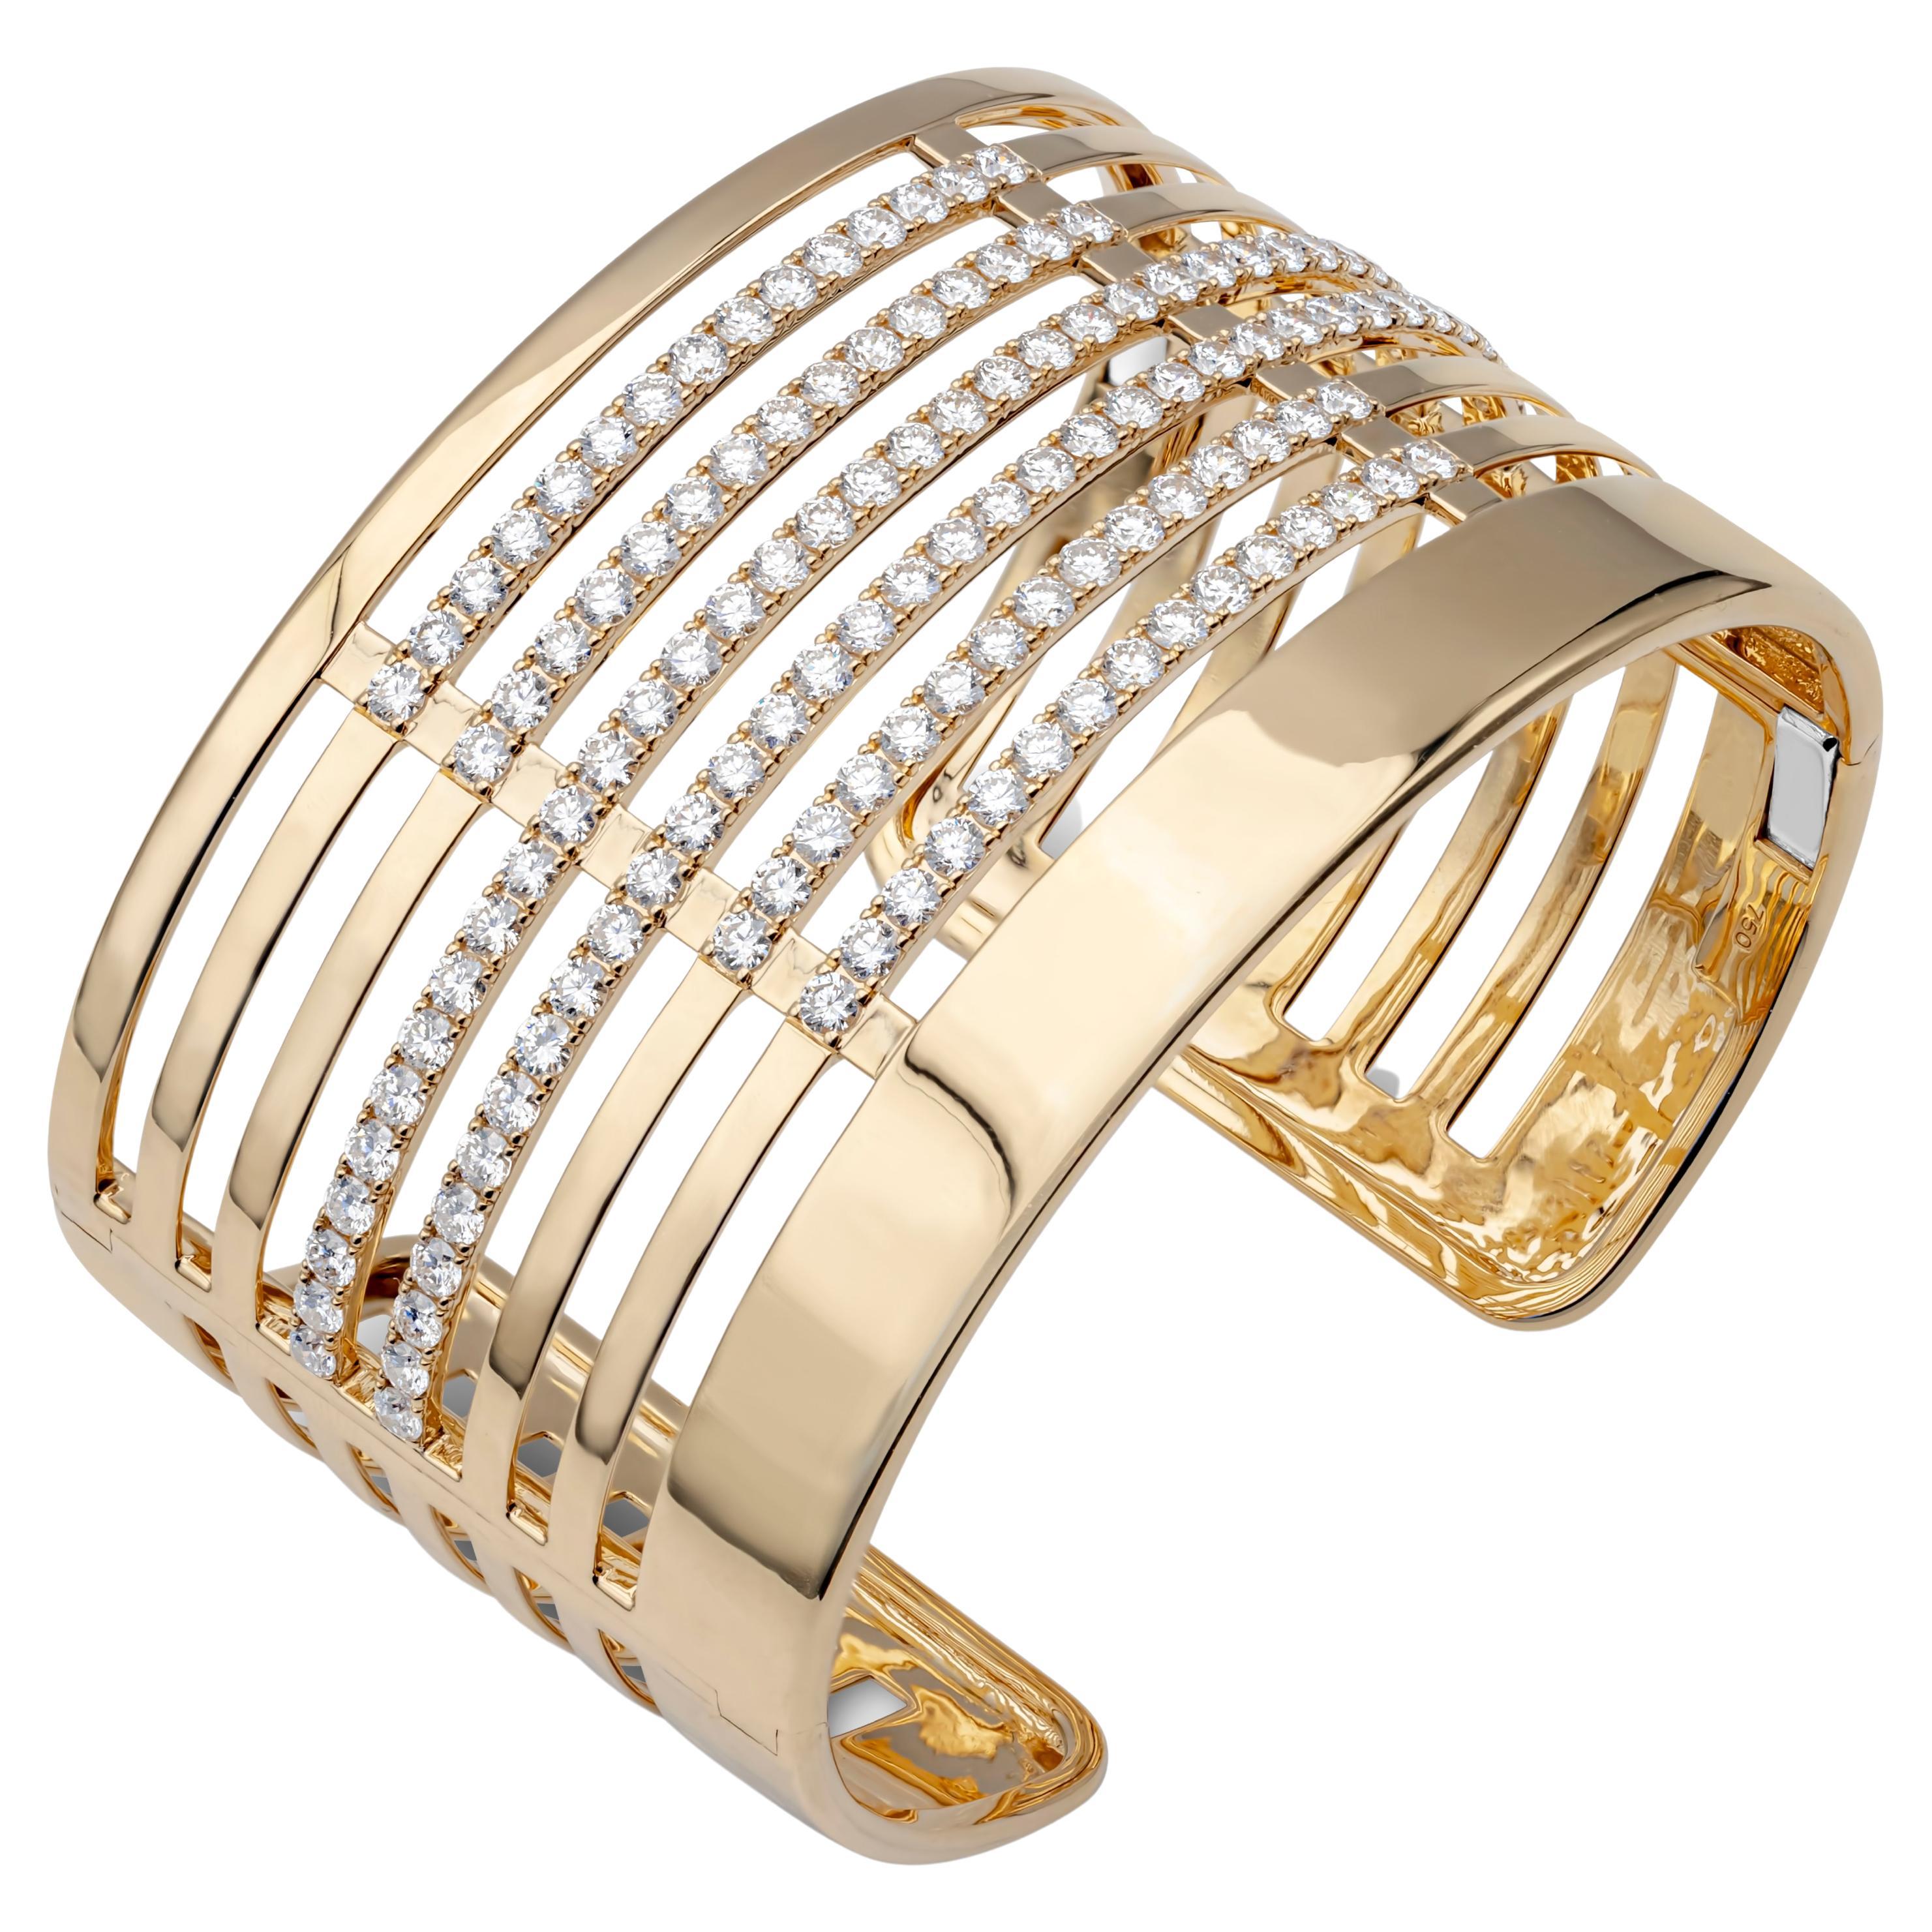 Ce bracelet en or jaune 18 carats est rehaussé de 130 diamants ronds brillants pesant 6,69 carats au total, de couleur F-G et de pureté VS-SI, sertis dans une large manchette ajourée intemporelle. Longueur de 6,5 pouces et largeur de 40 mm.

Roman